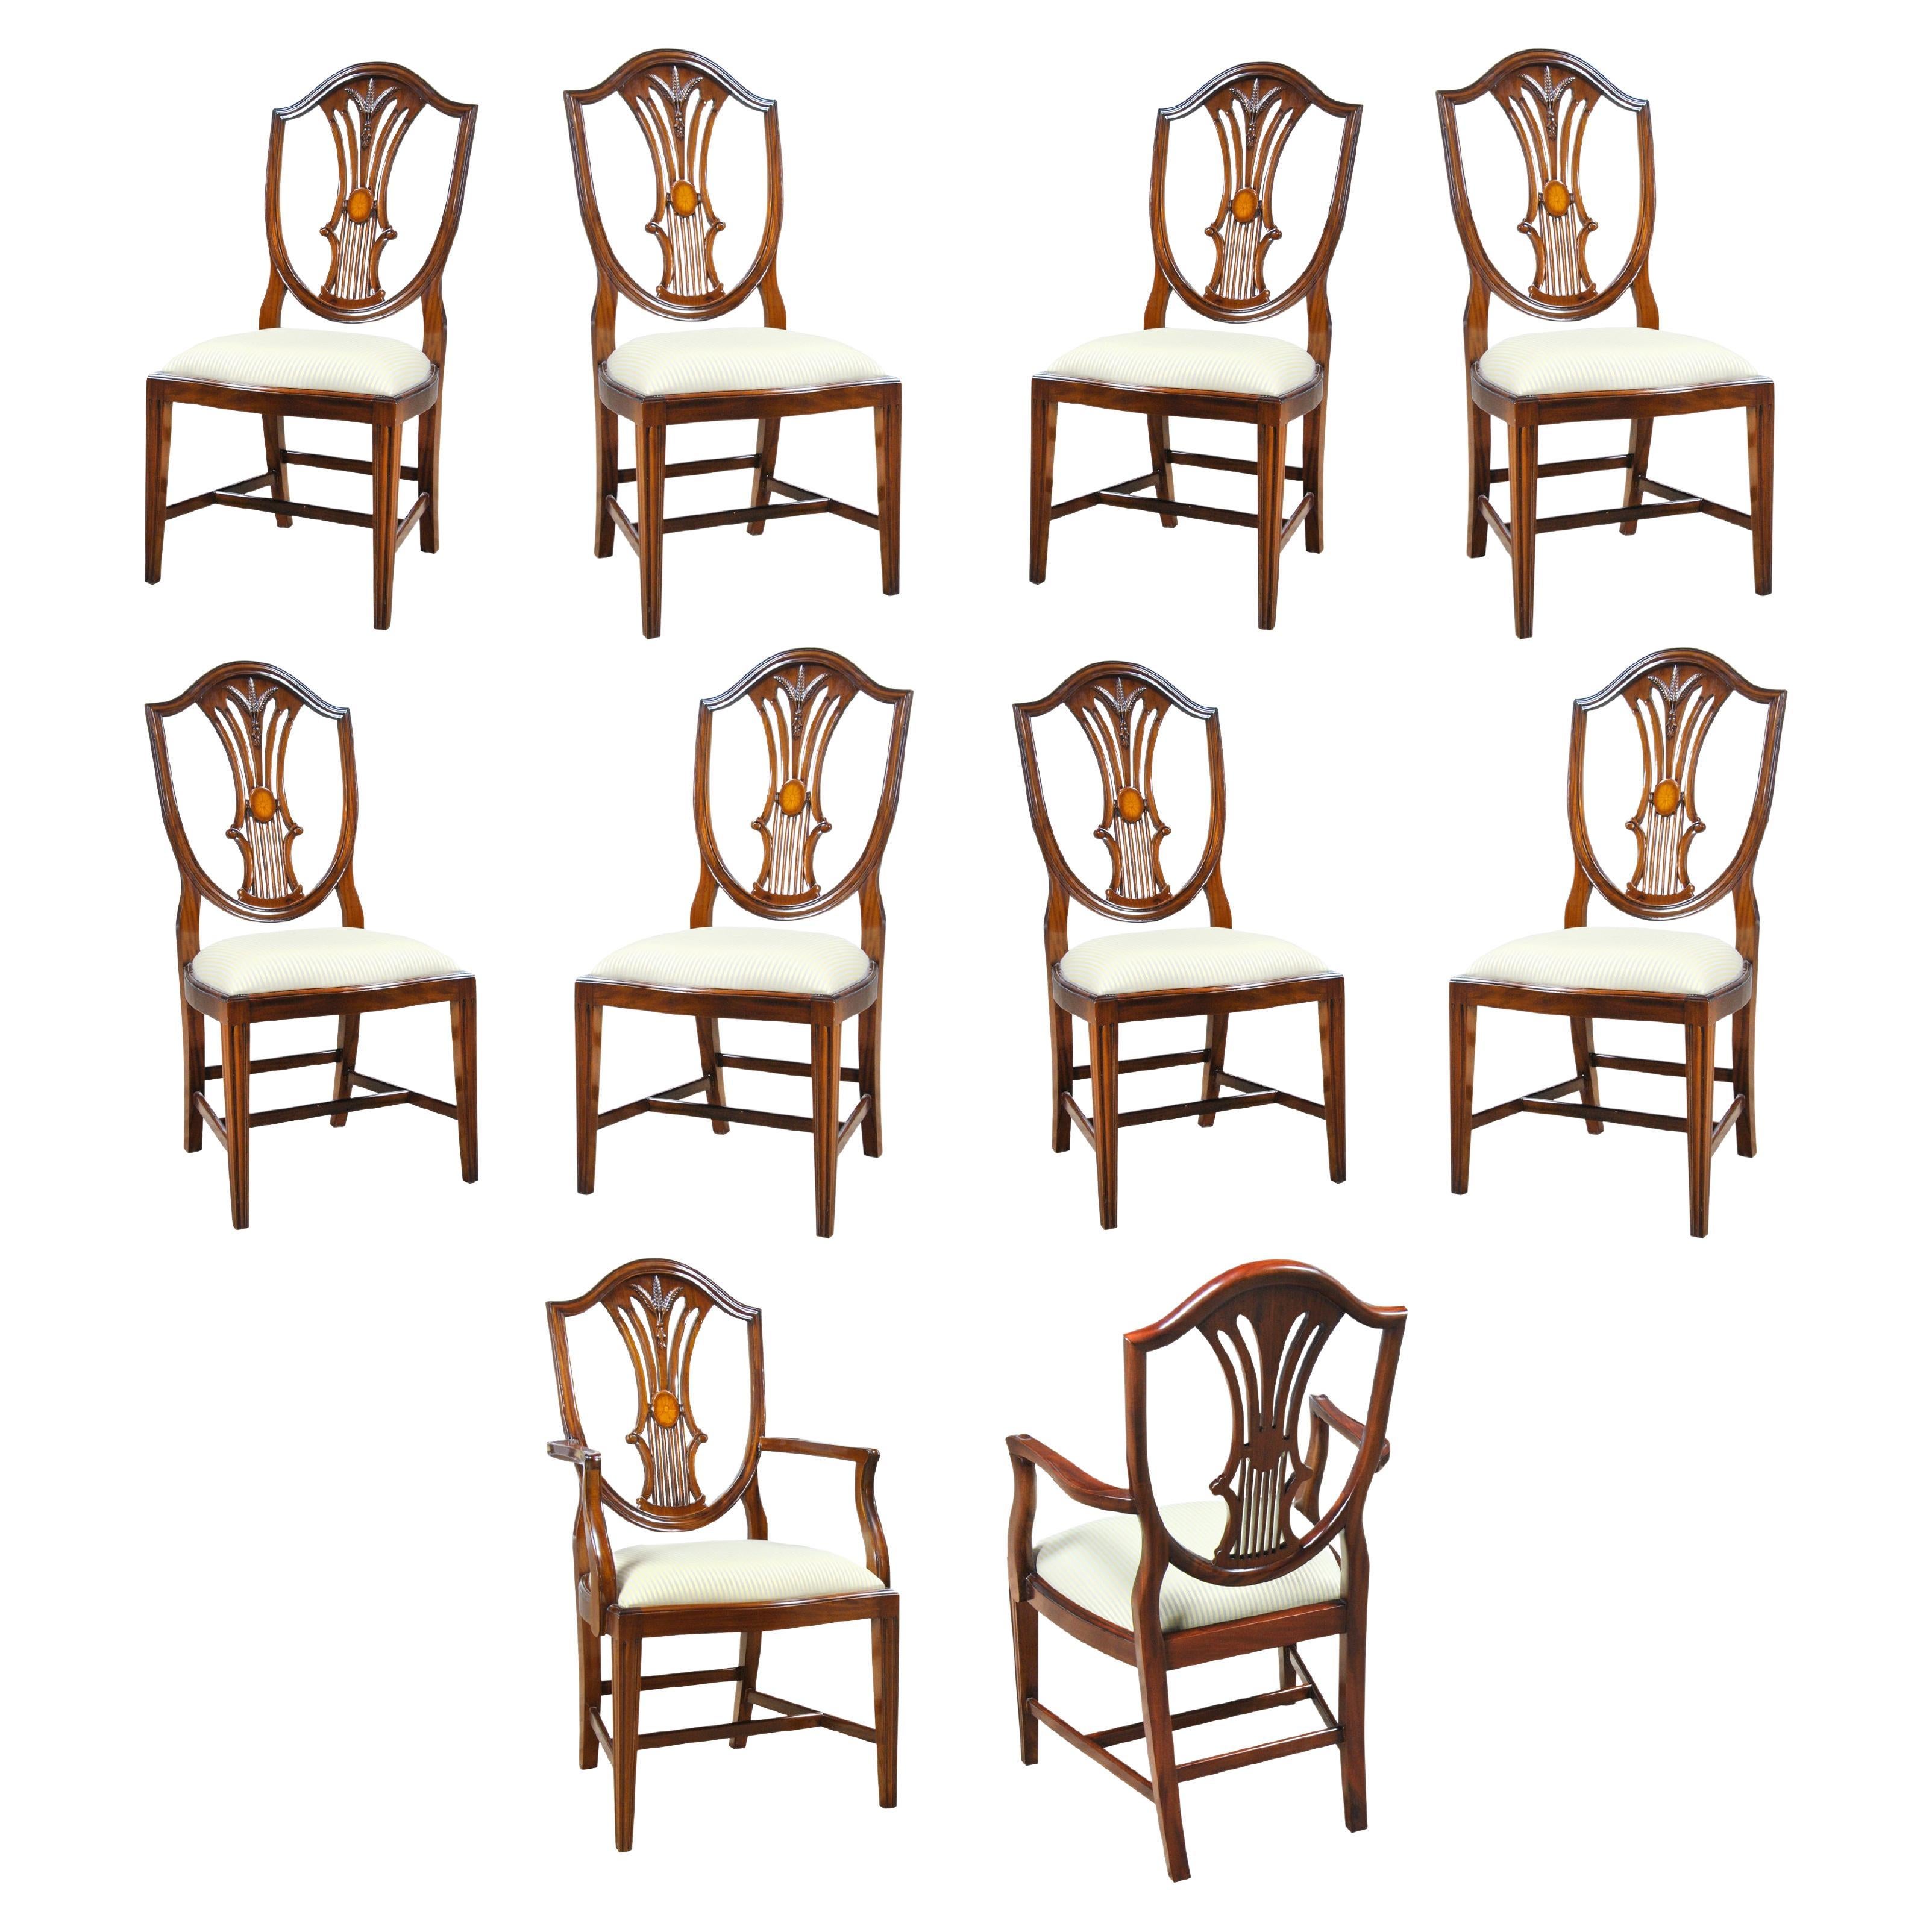 Stühle mit eingelegter Schildlehne, 10er-Set